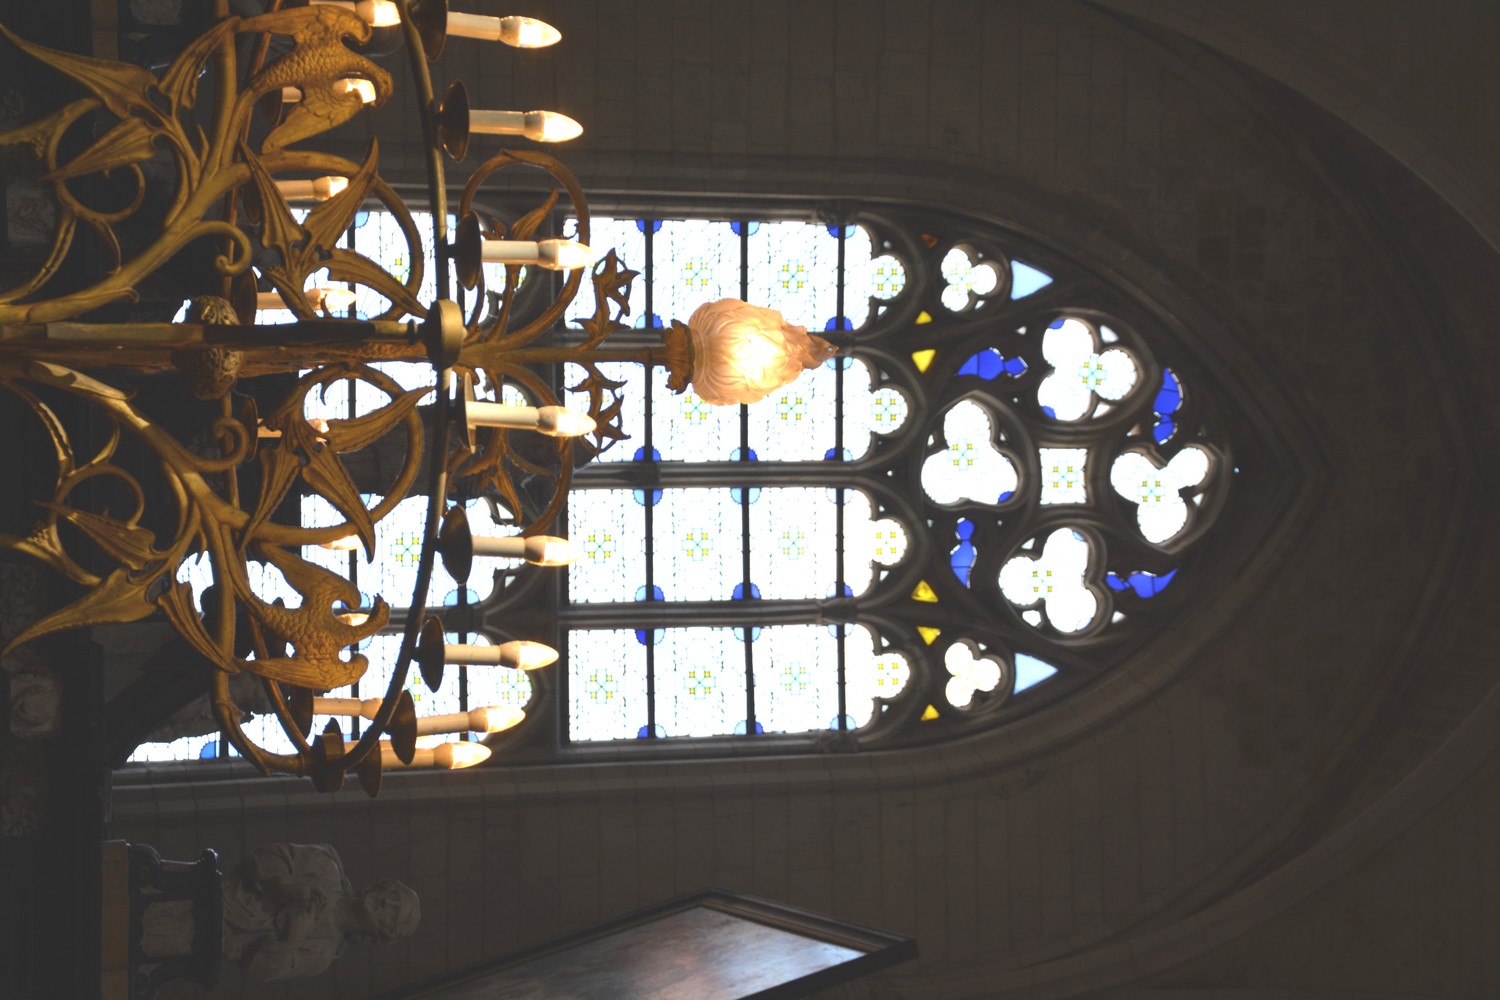 Cathédrale de Saint-Omer  -  Chapelle Sainte Aldegonde - vitrail